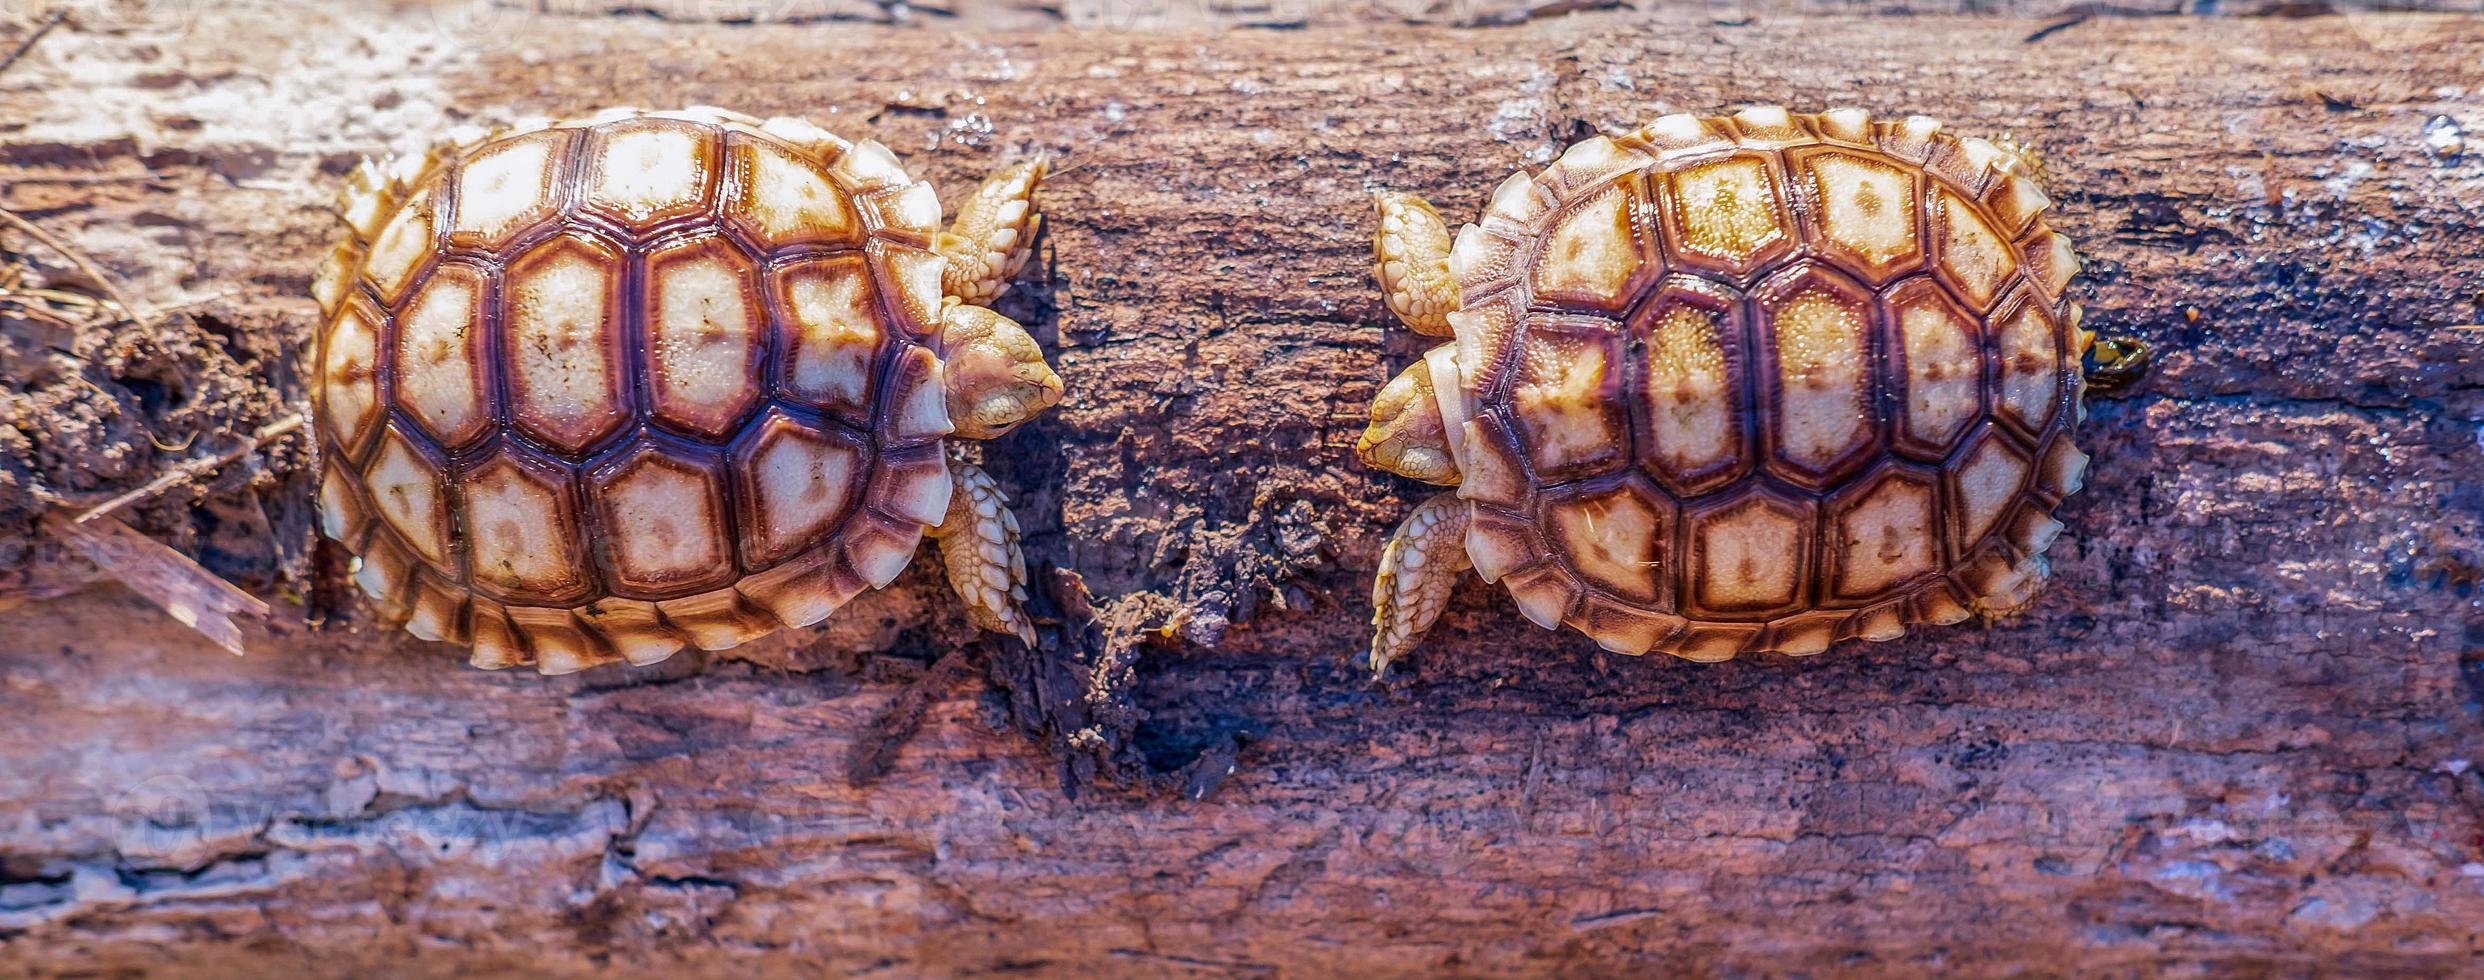 schließen oben von zwei Sulcata Schildkröte oder afrikanisch angespornt Schildkröte klassifiziert wie ein groß Schildkröte im Natur, oben Aussicht von Paar schön Baby afrikanisch Sporn Schildkröten auf ein groß Log foto